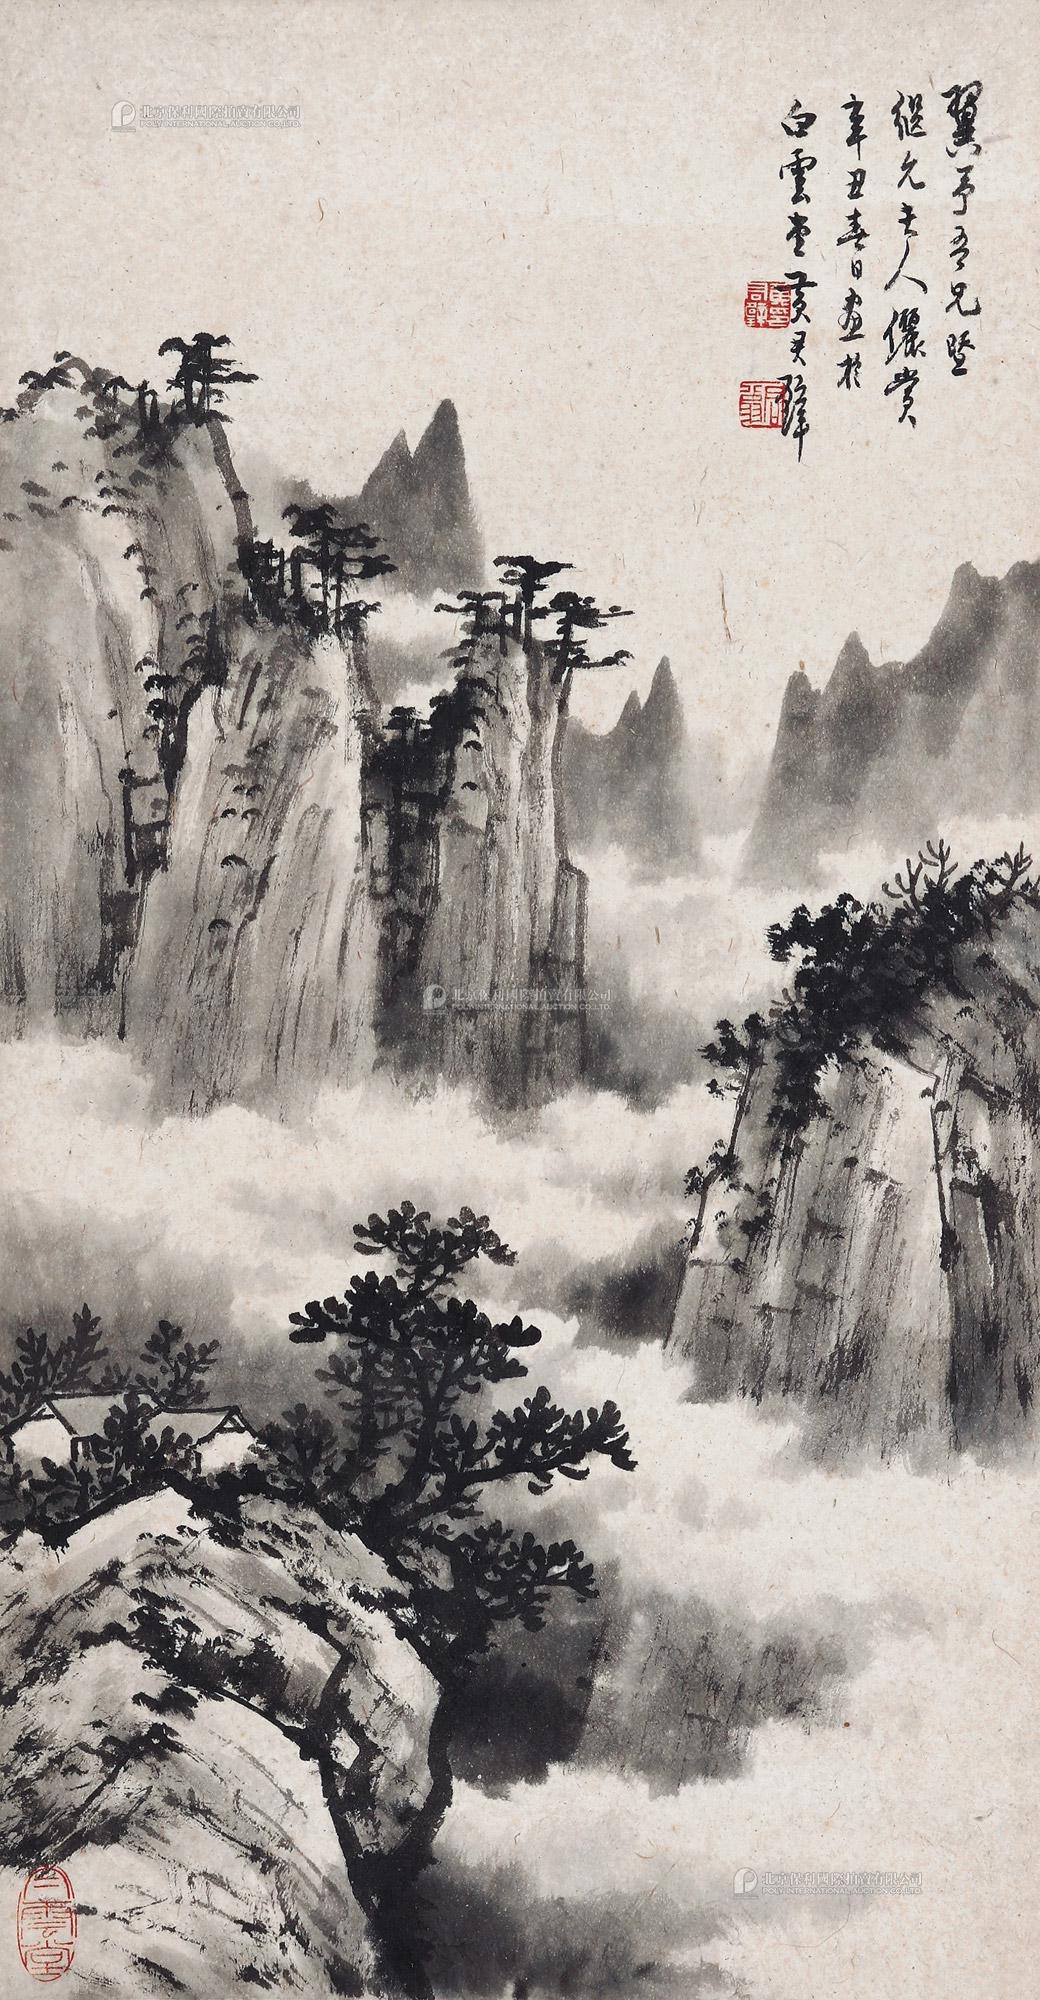 Landscape by Huang Junbi, Dated 1961